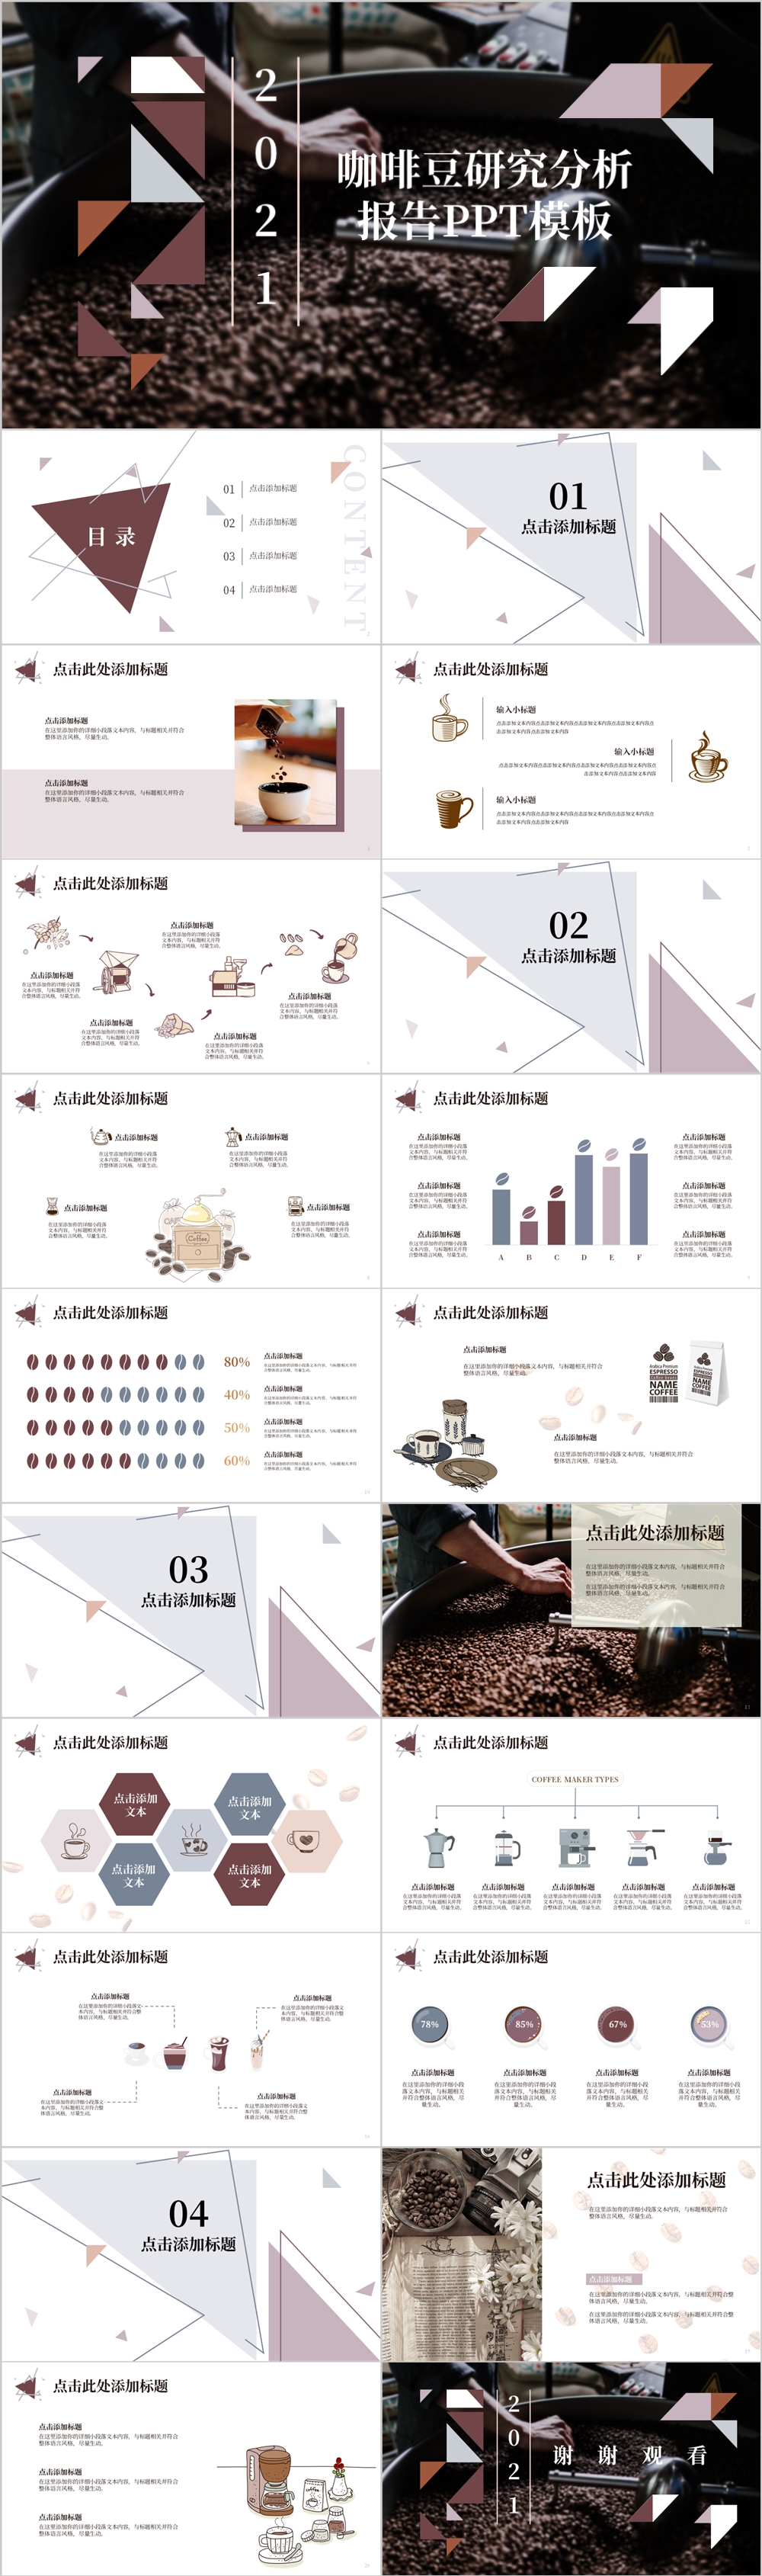 咖啡豆研究分析报告PPT模板